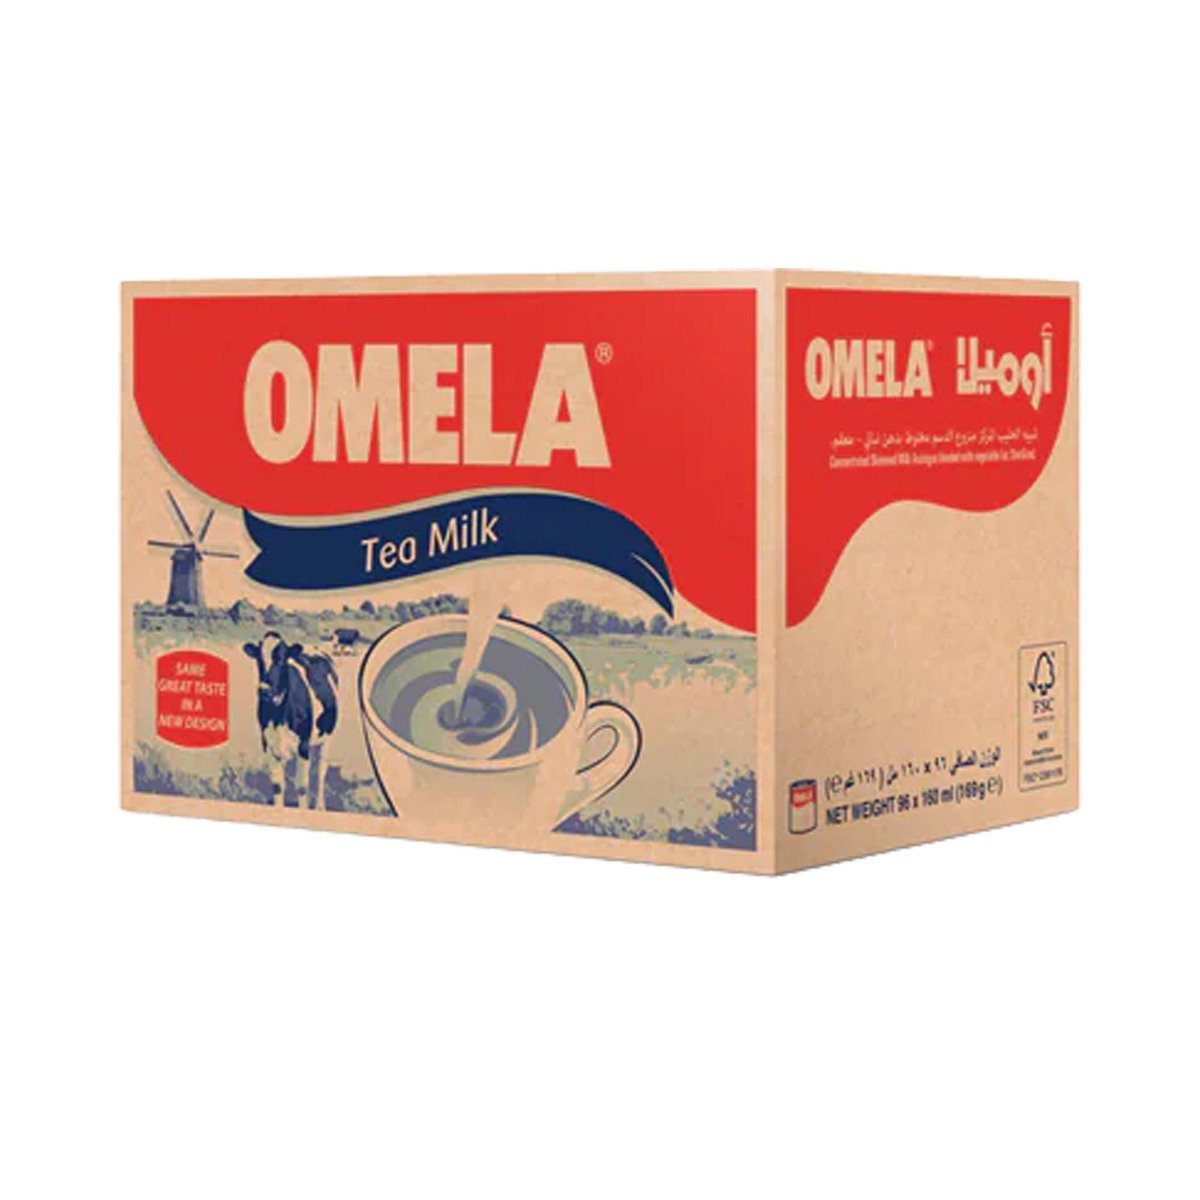 Omela Tea Milk 169 g